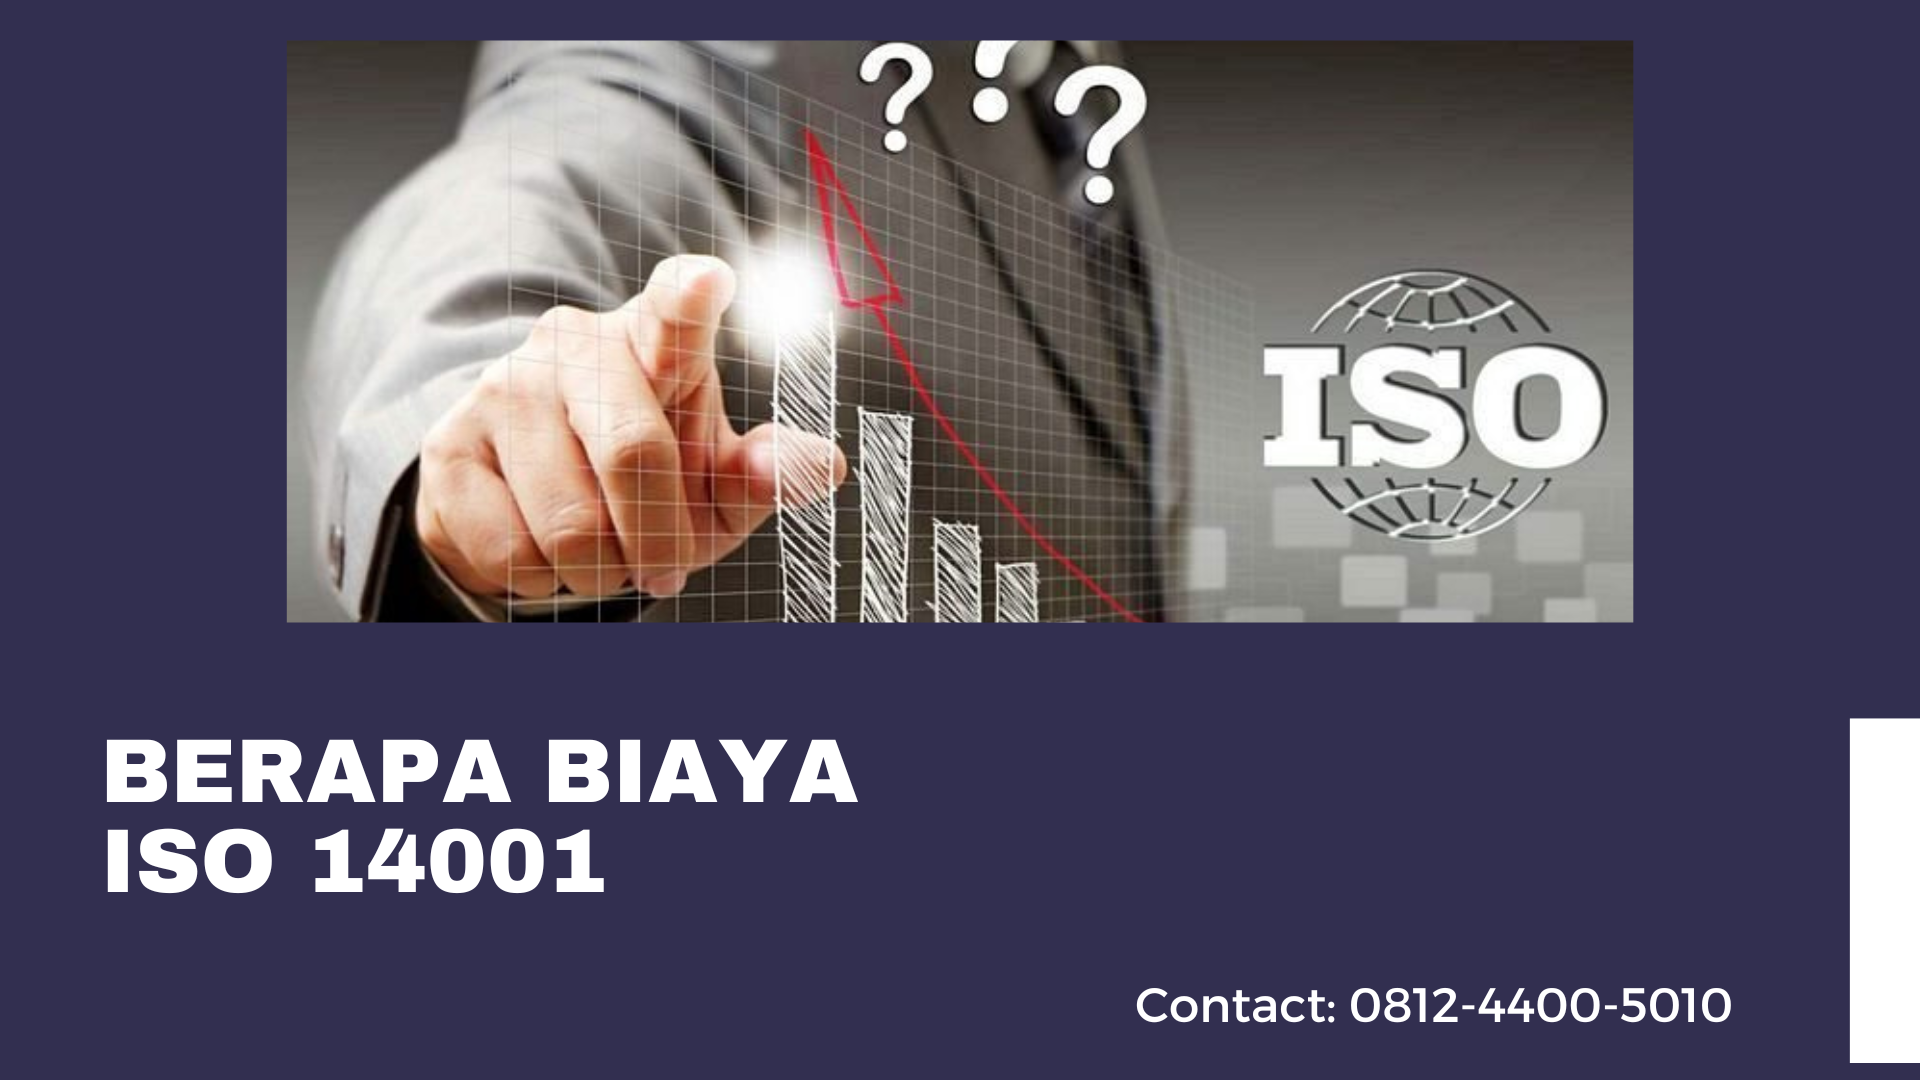 Berapa Biaya ISO 14001